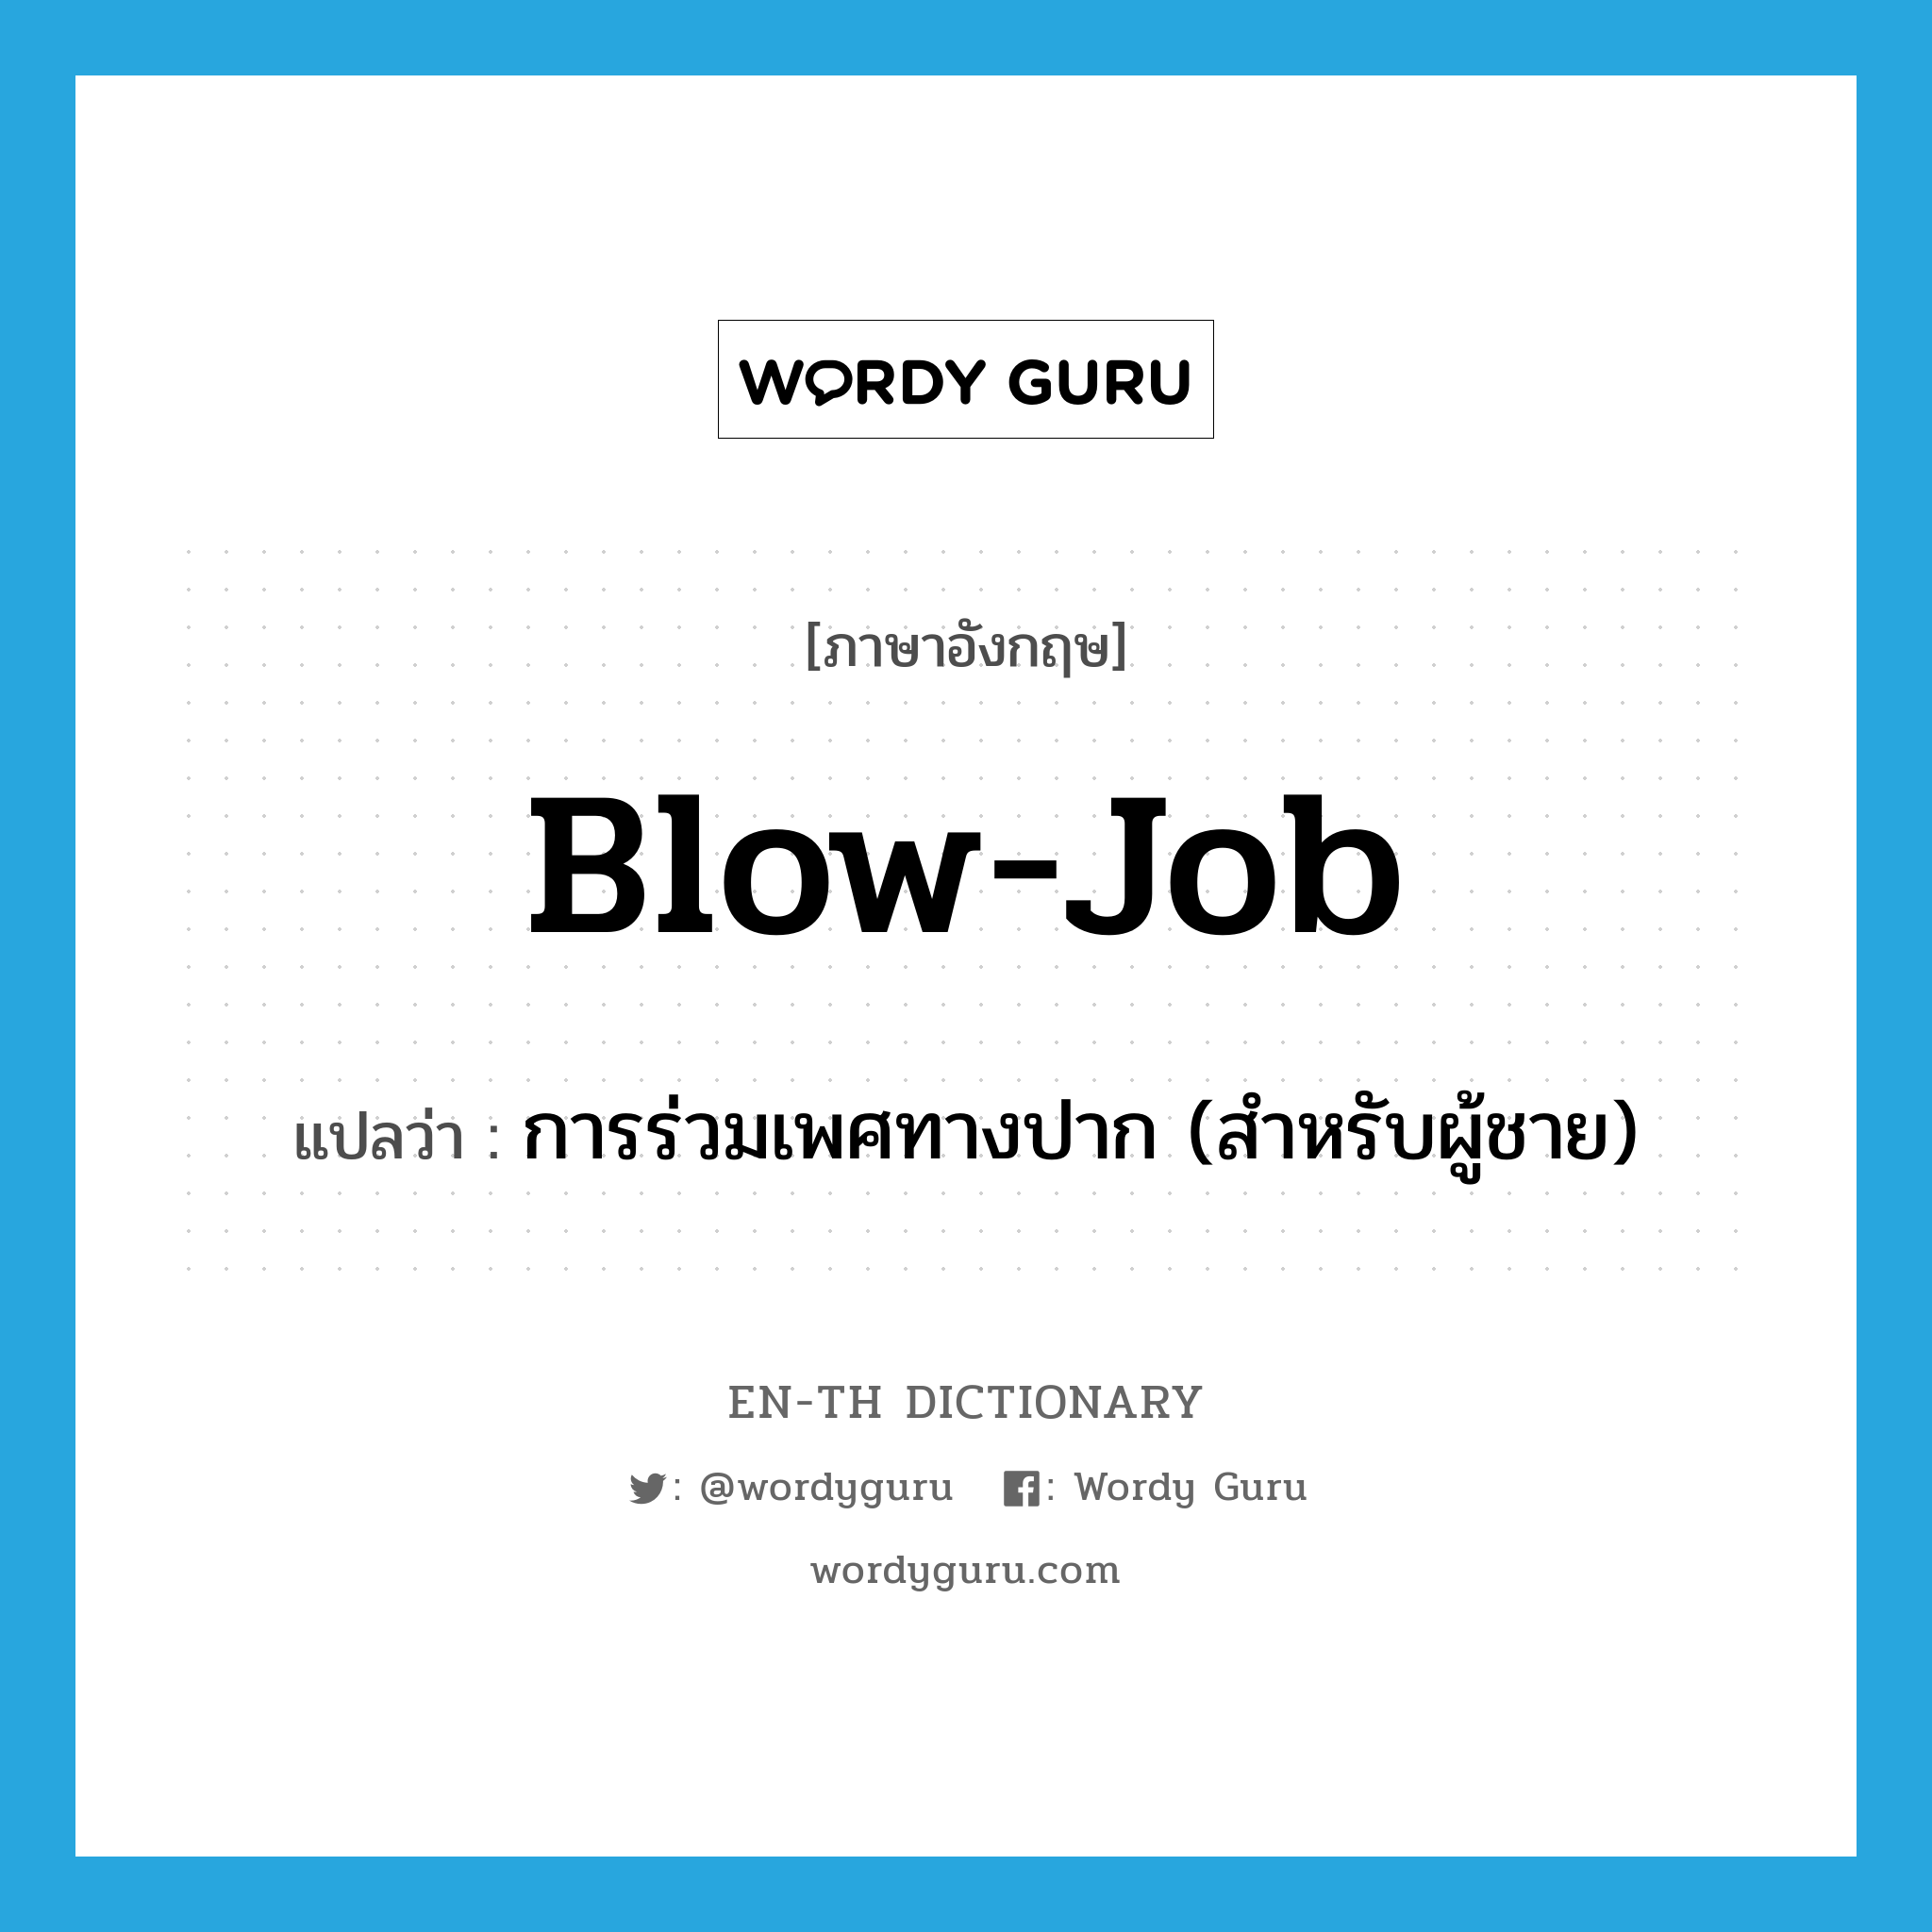 การร่วมเพศทางปาก (สำหรับผู้ชาย) ภาษาอังกฤษ?, คำศัพท์ภาษาอังกฤษ การร่วมเพศทางปาก (สำหรับผู้ชาย) แปลว่า blow-job ประเภท SL หมวด SL